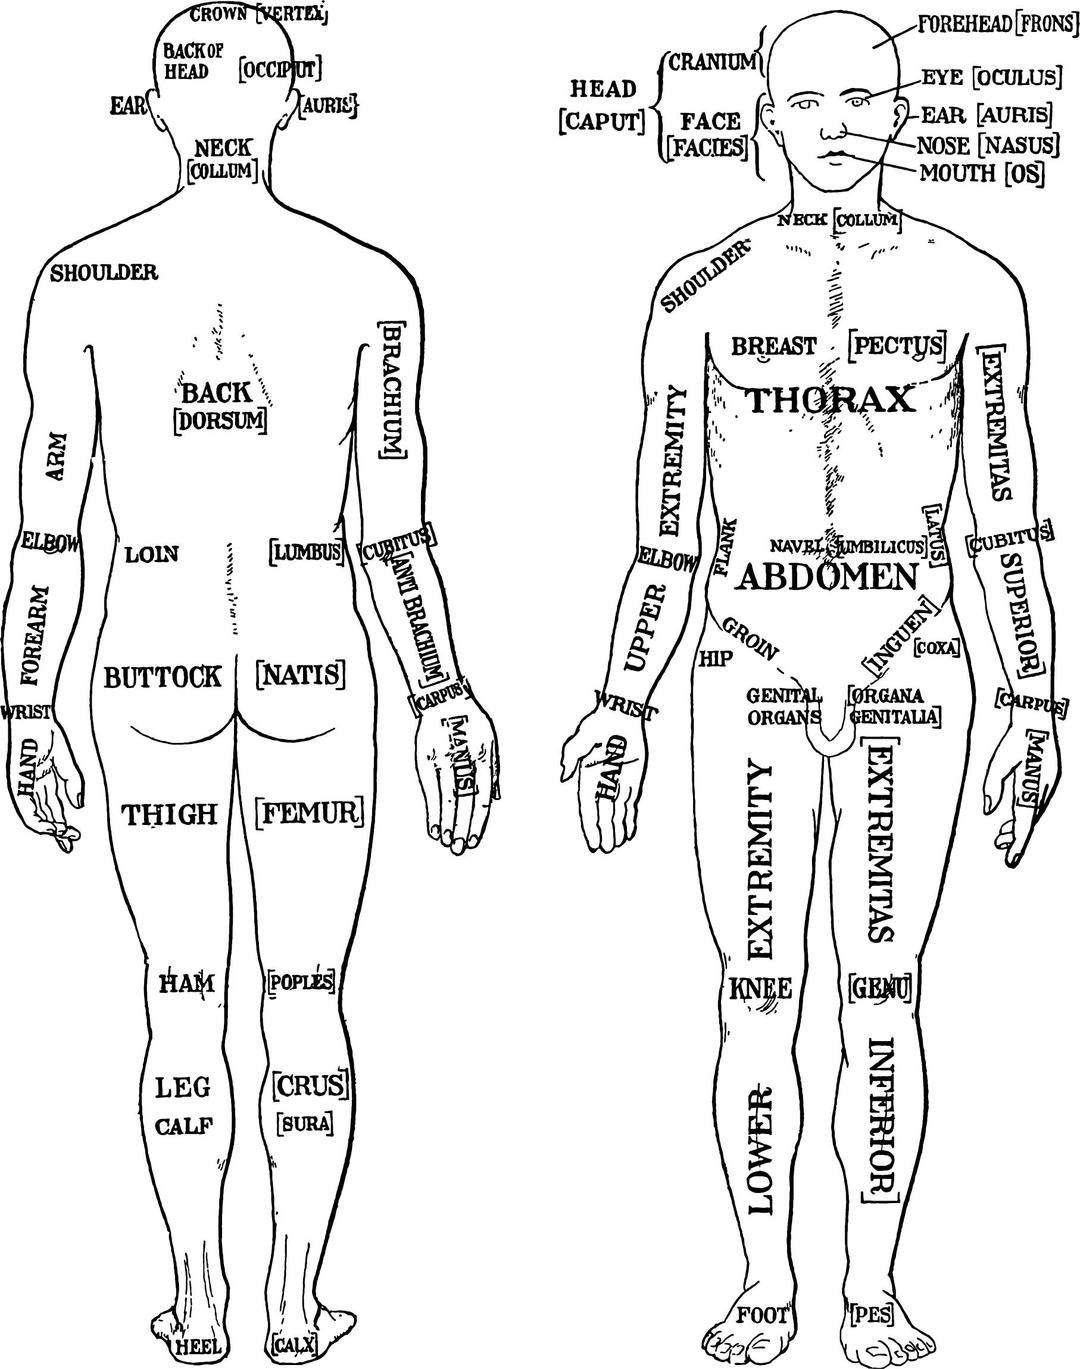 Morris Human Anatomy Diagram 1933 png transparent